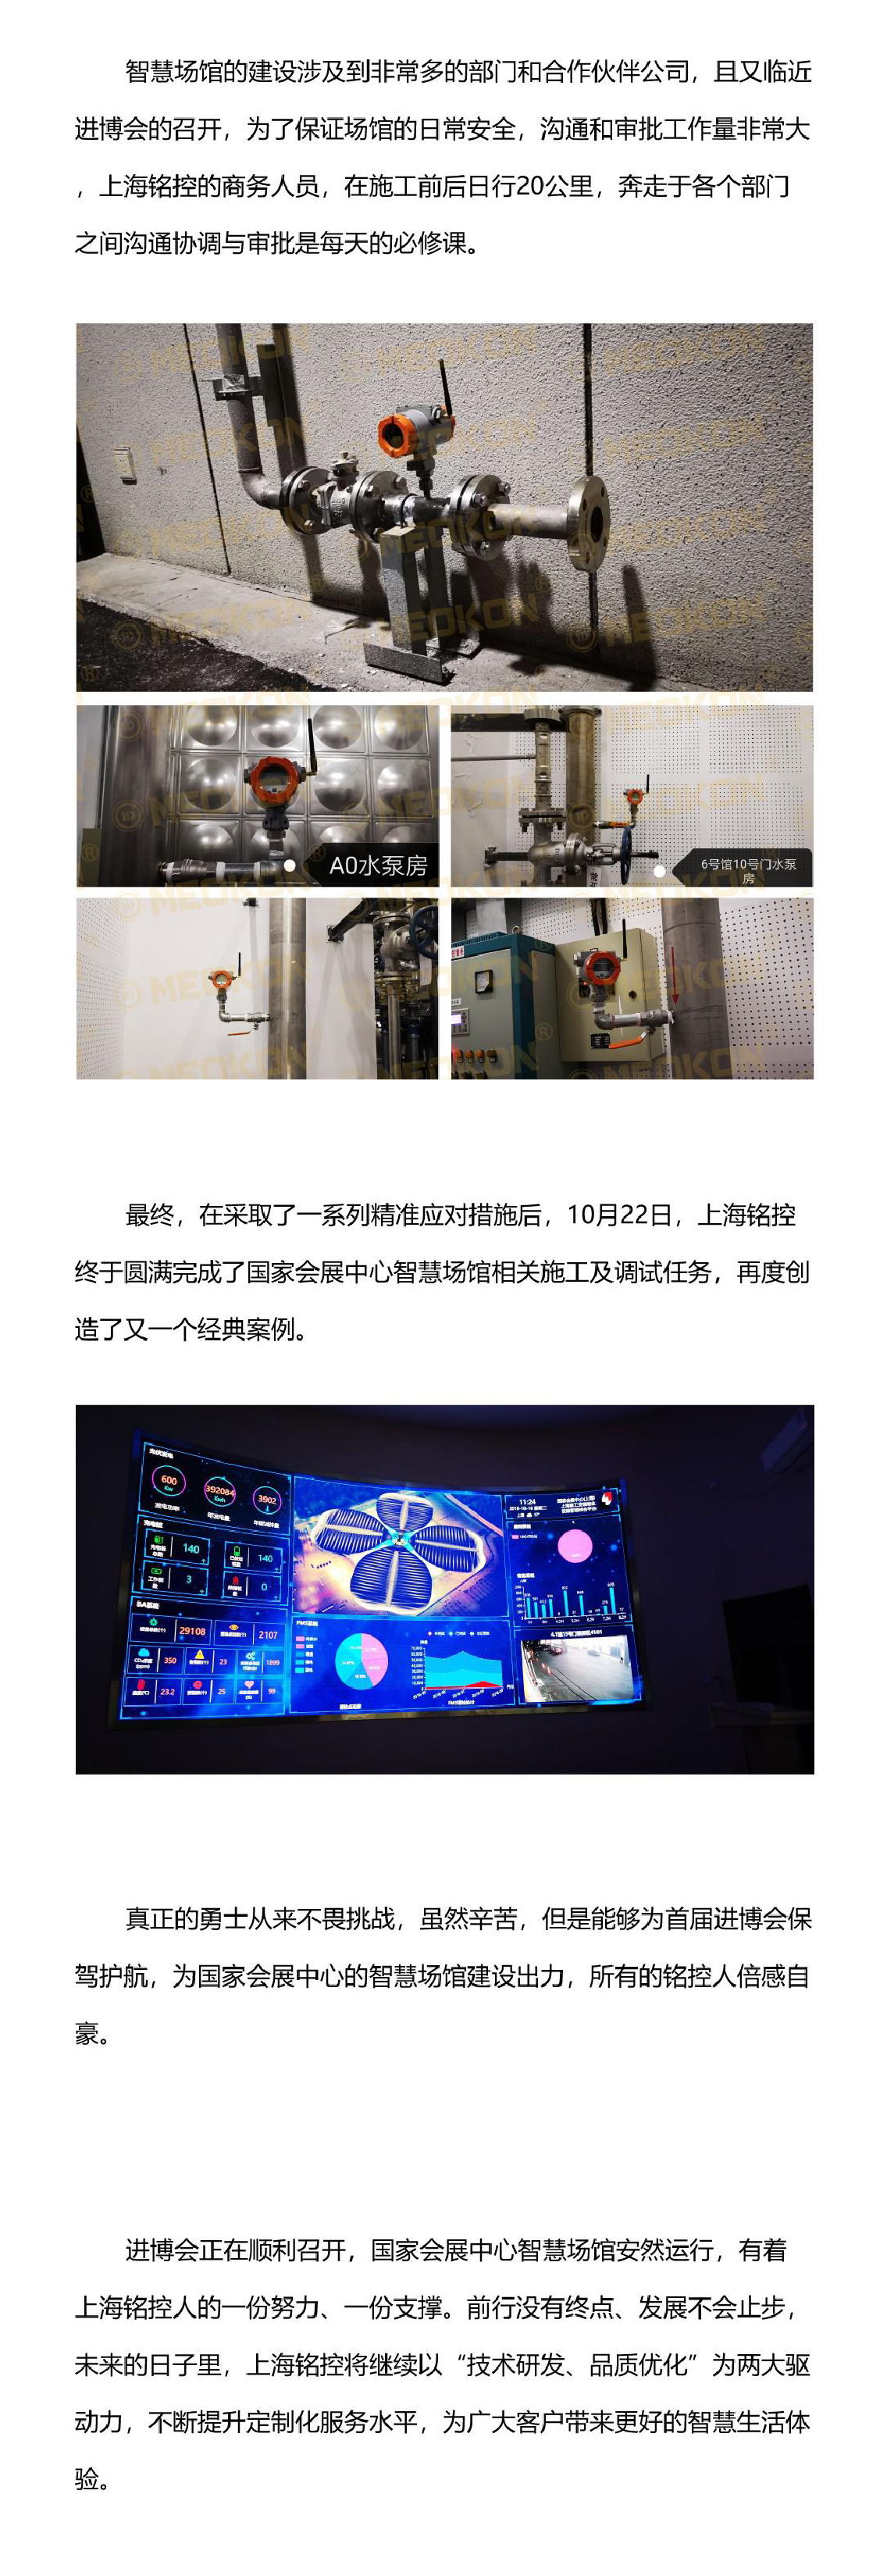 喜迎进口博览会，上海铭控助力智慧场馆建设图片